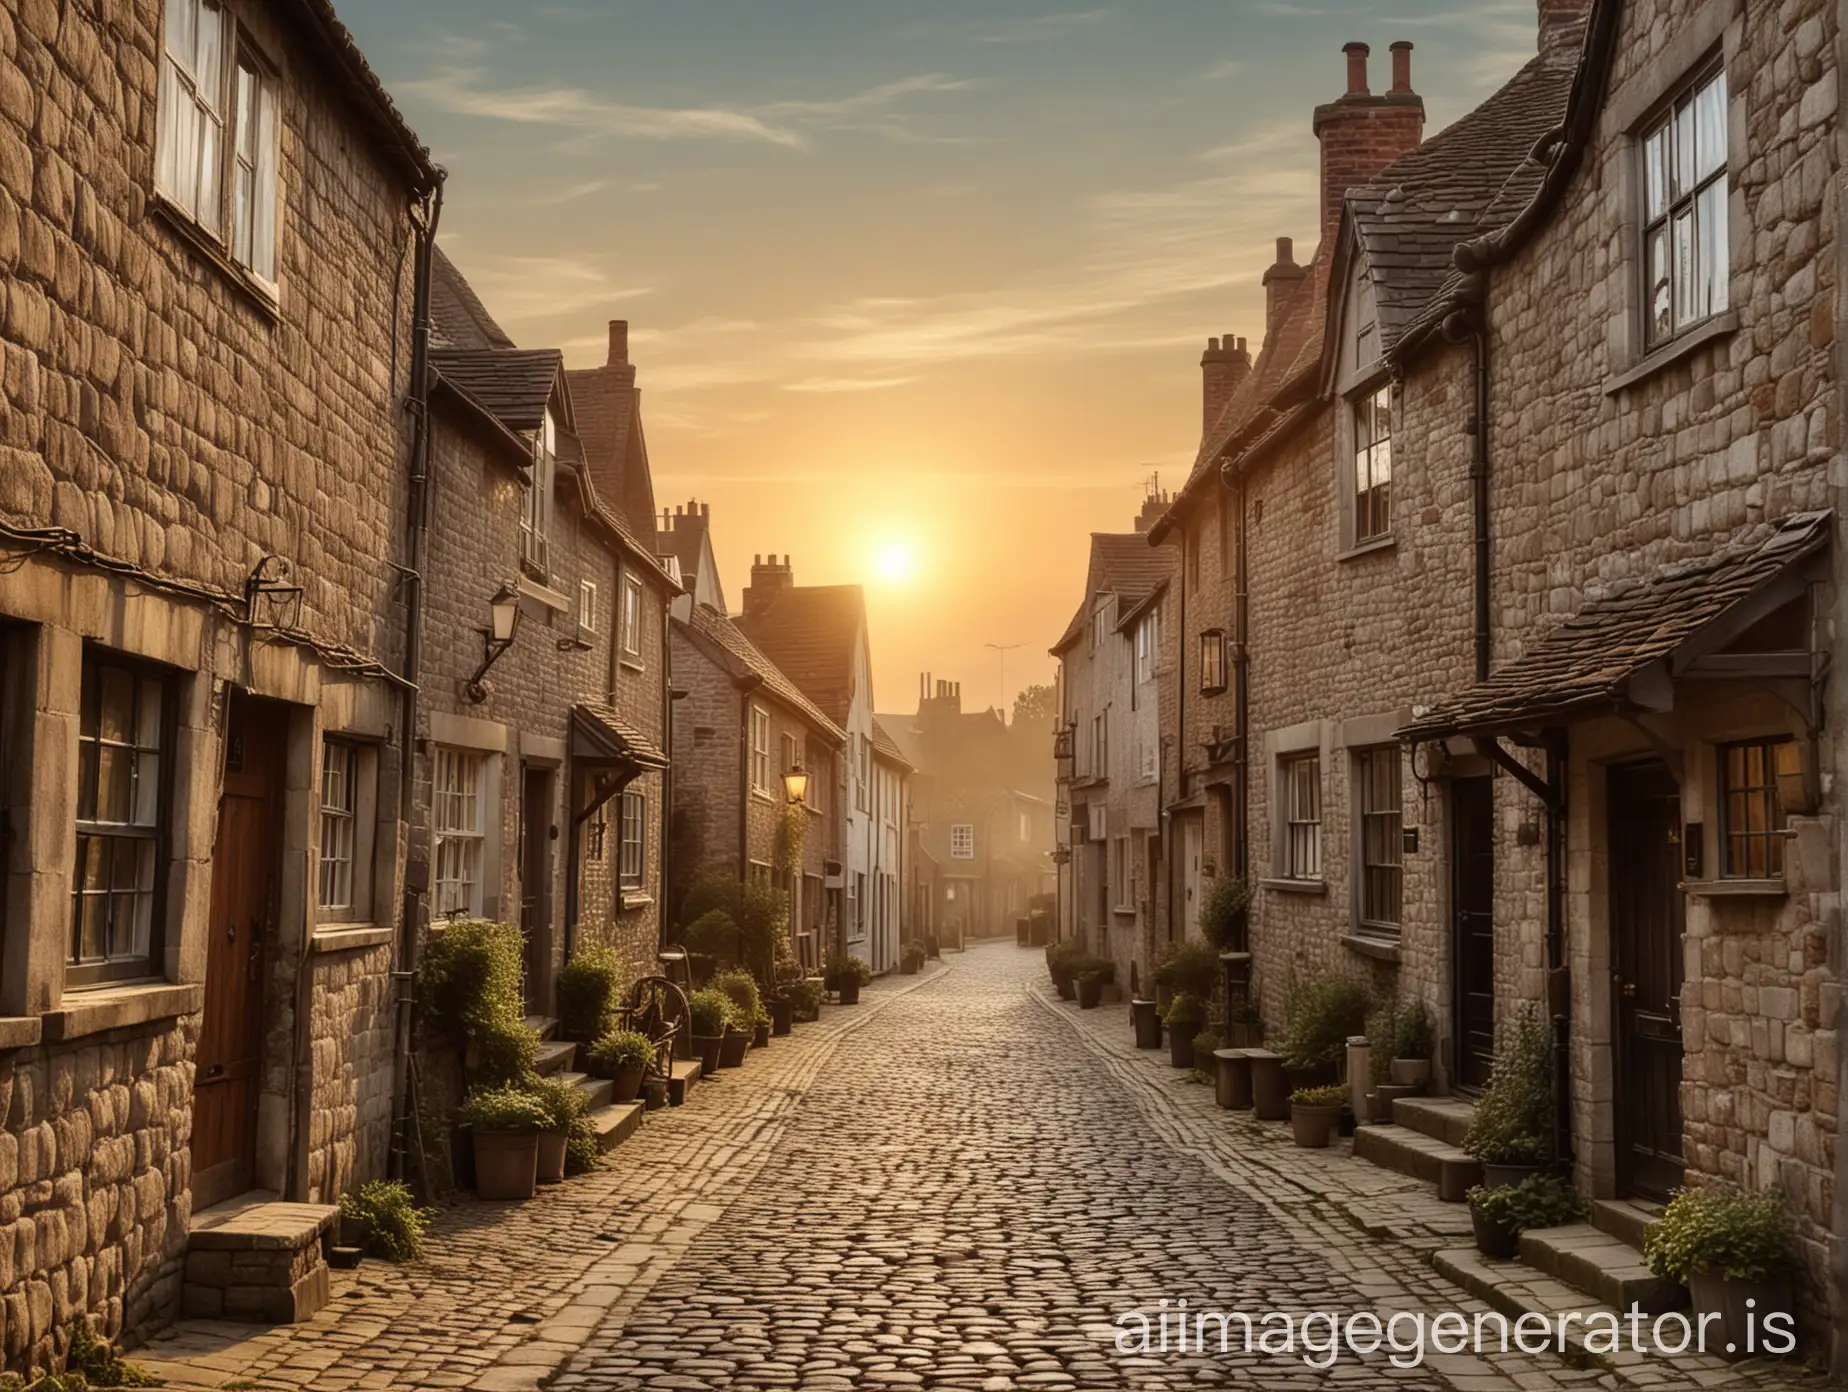 Vintage-English-Village-Sunrise-on-Cobblestone-Street